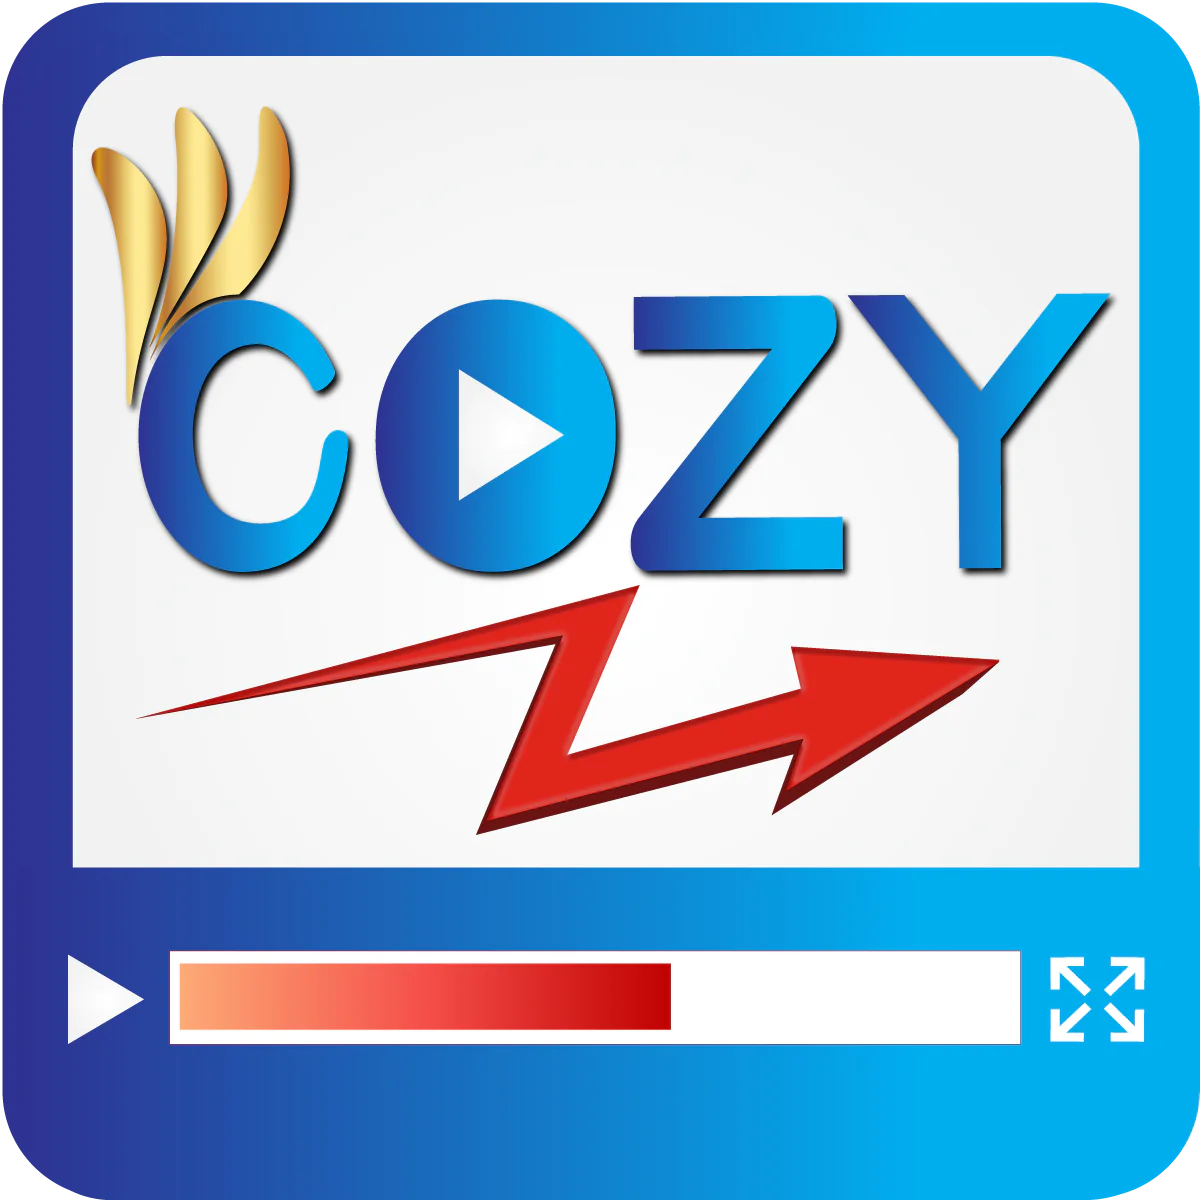 Cozy Video Gallery